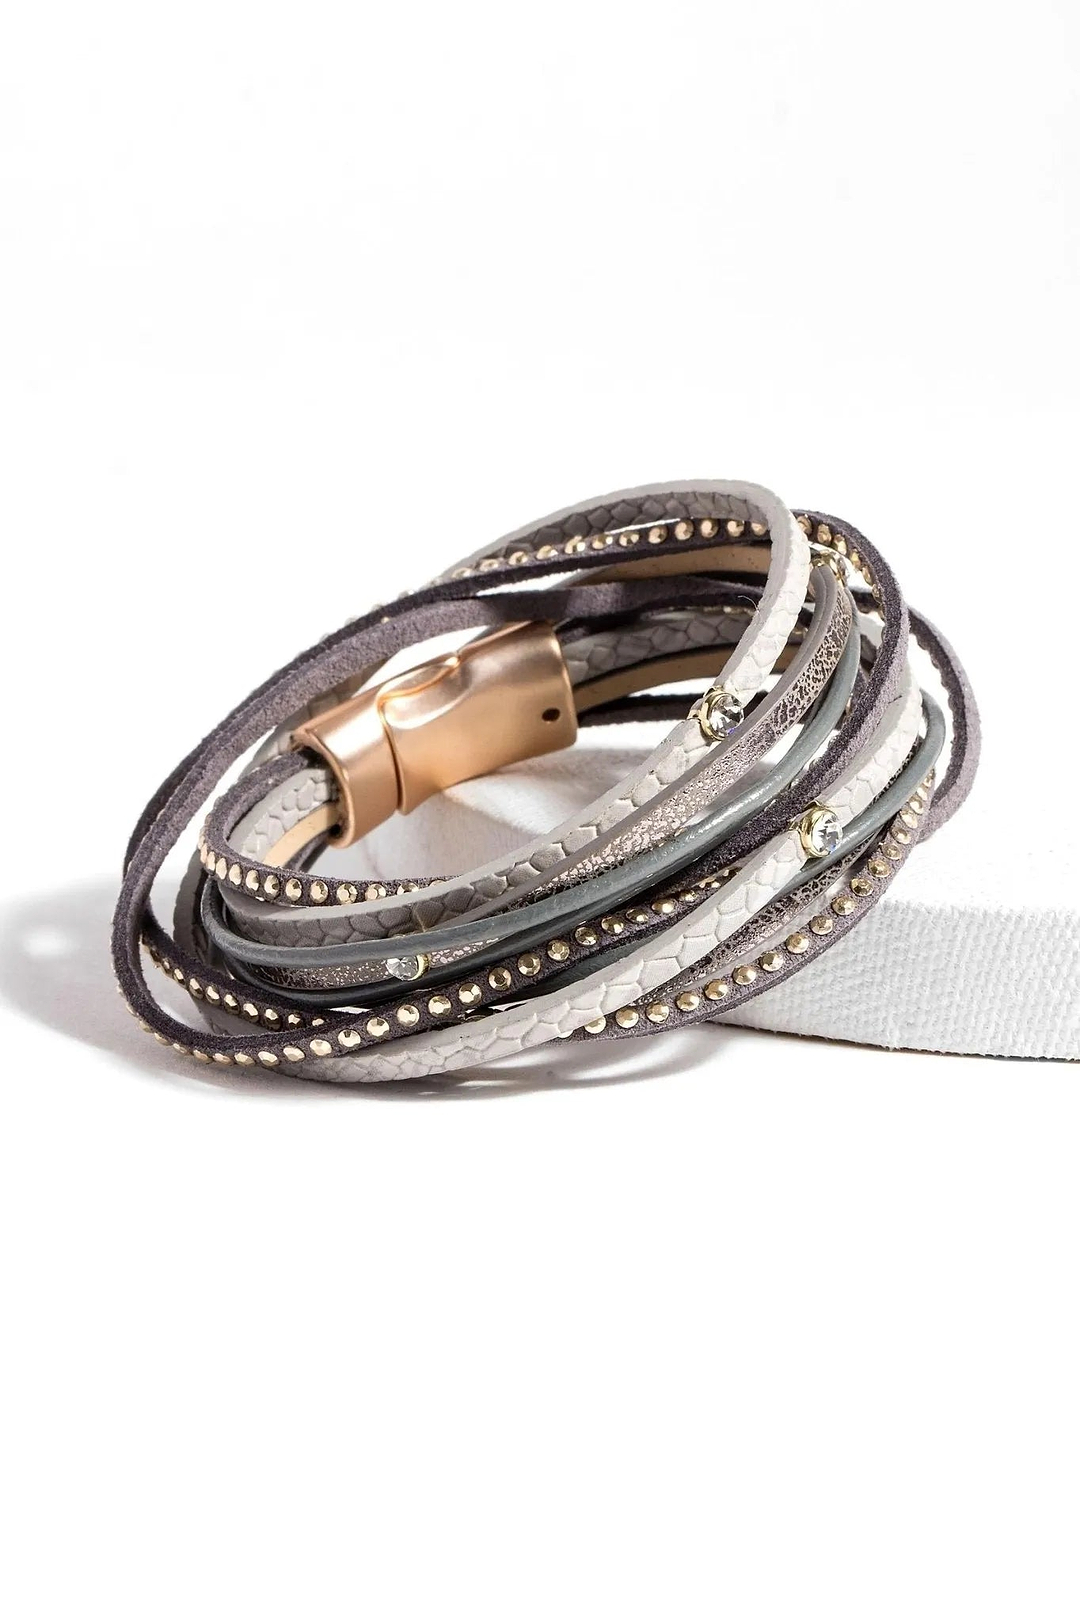 Segovia Double Wrap Leather Bracelet Darkgray